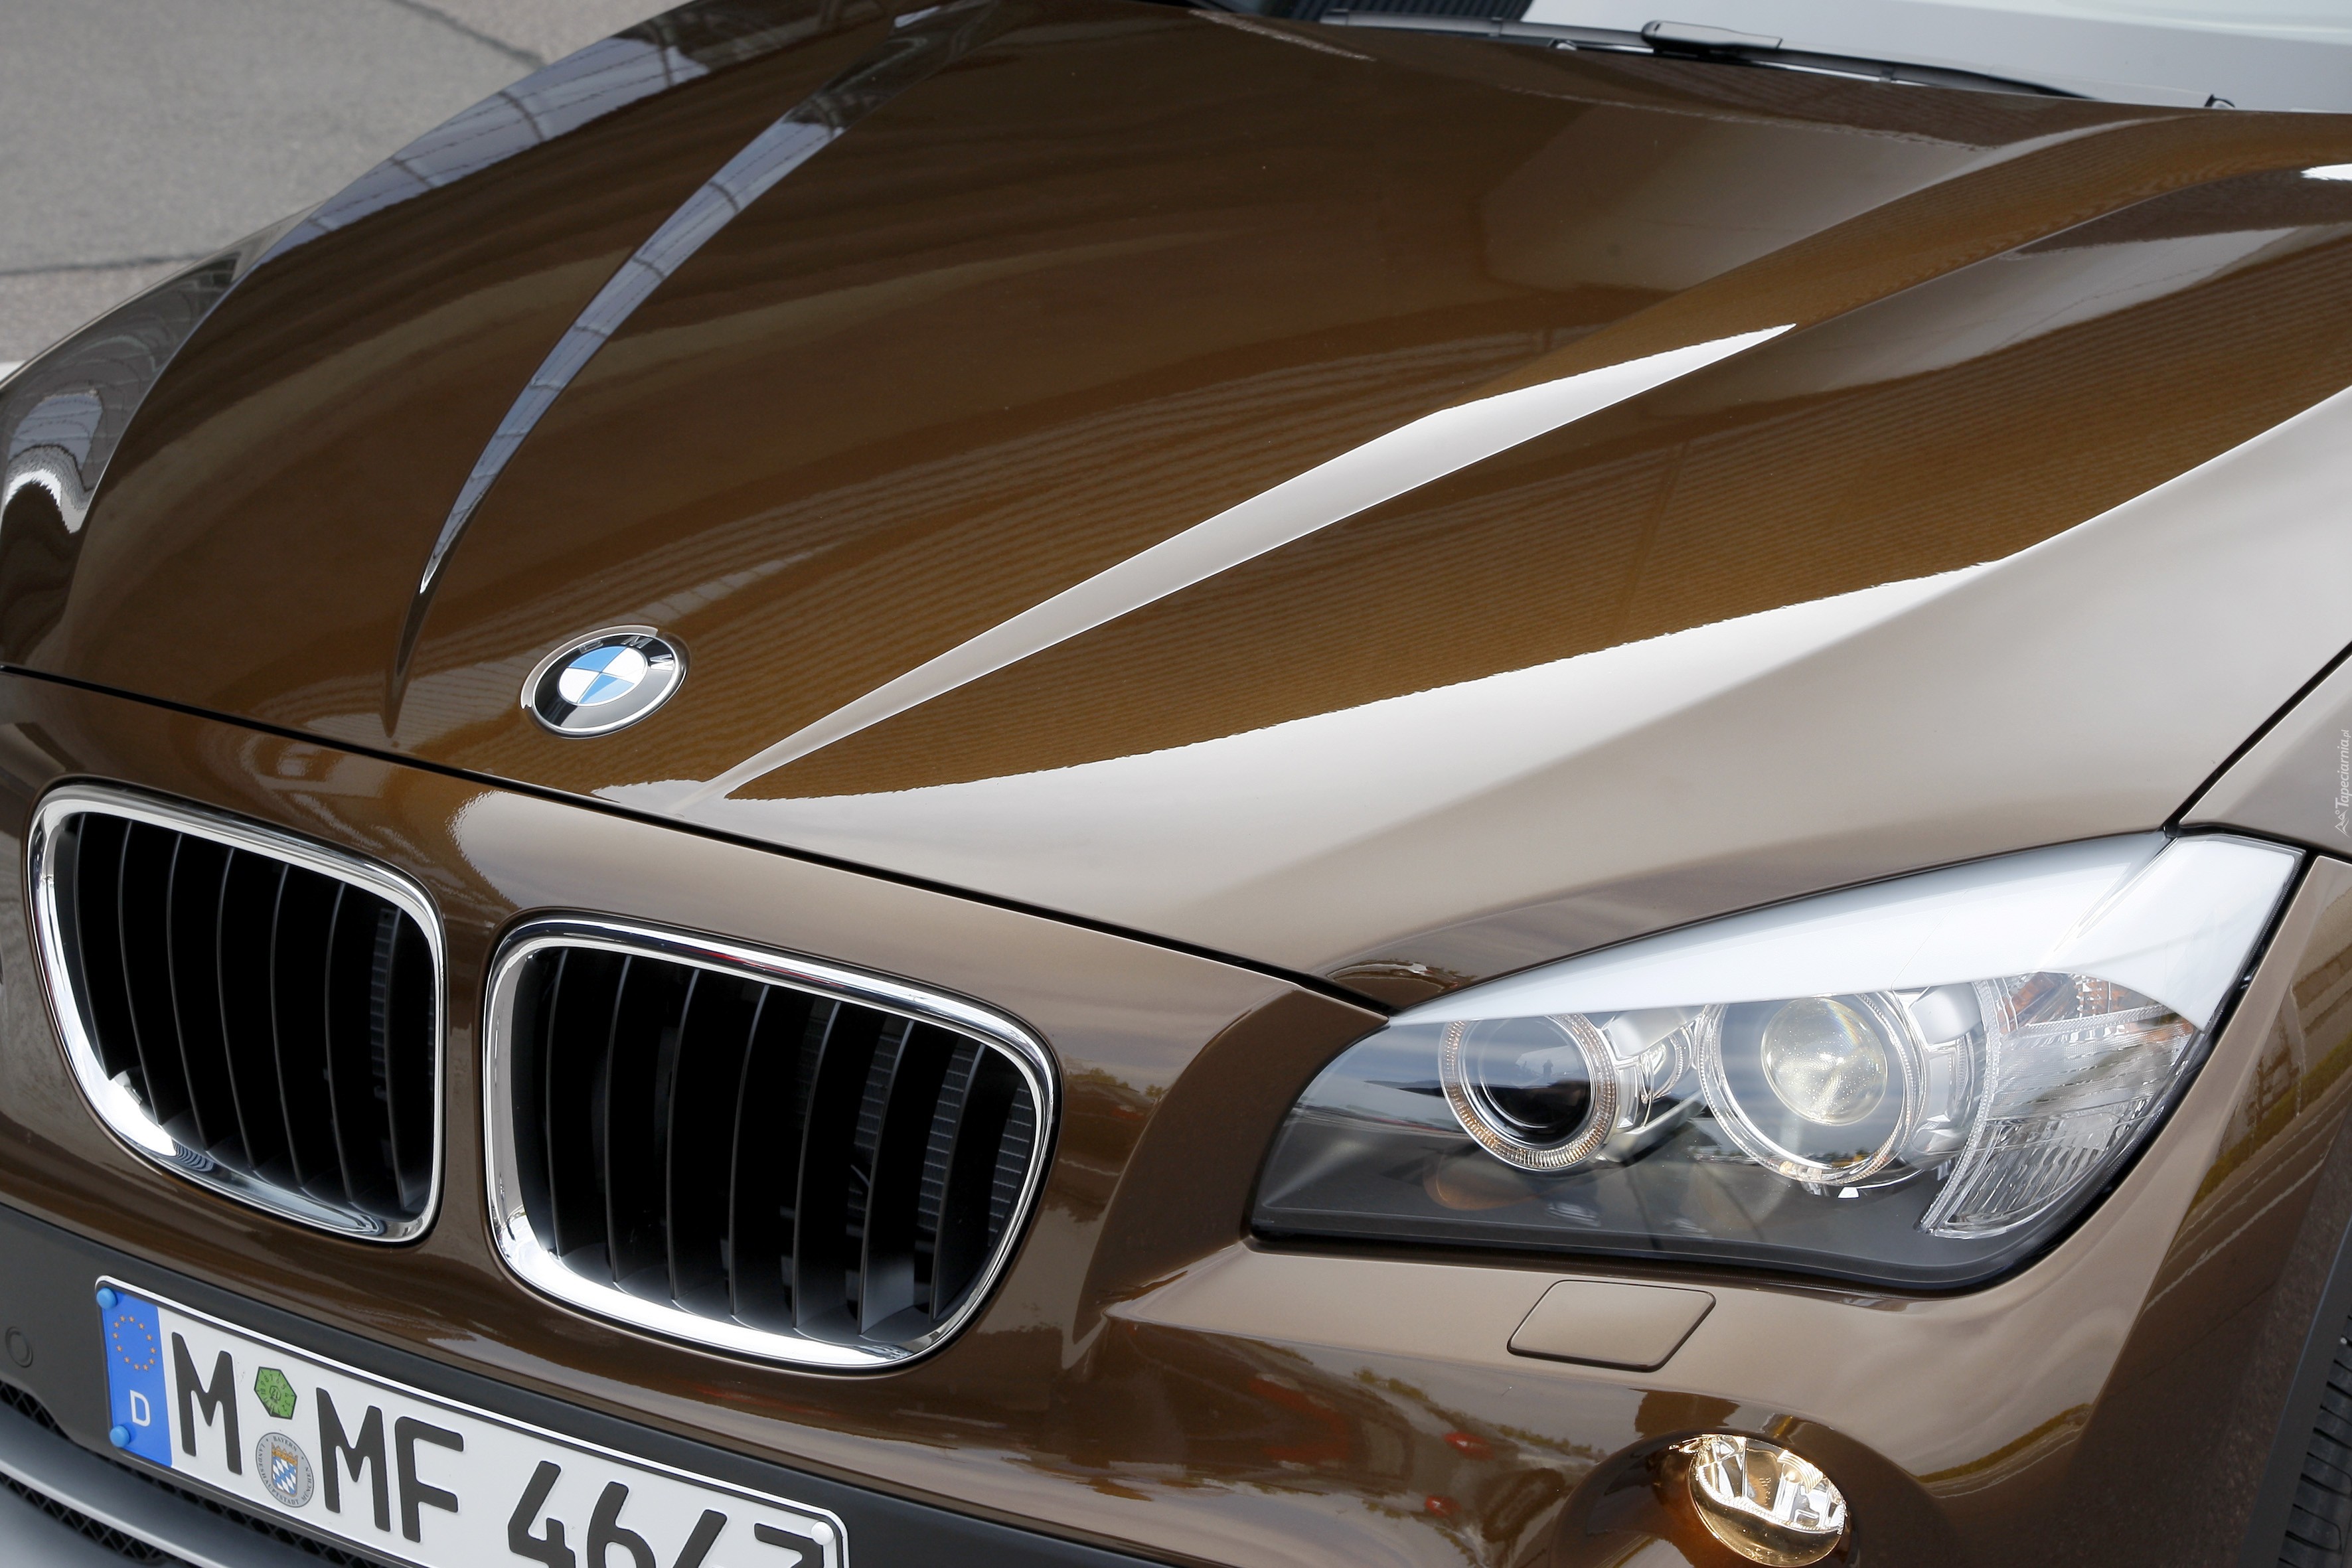 BMW X1, Maska, Reflektor